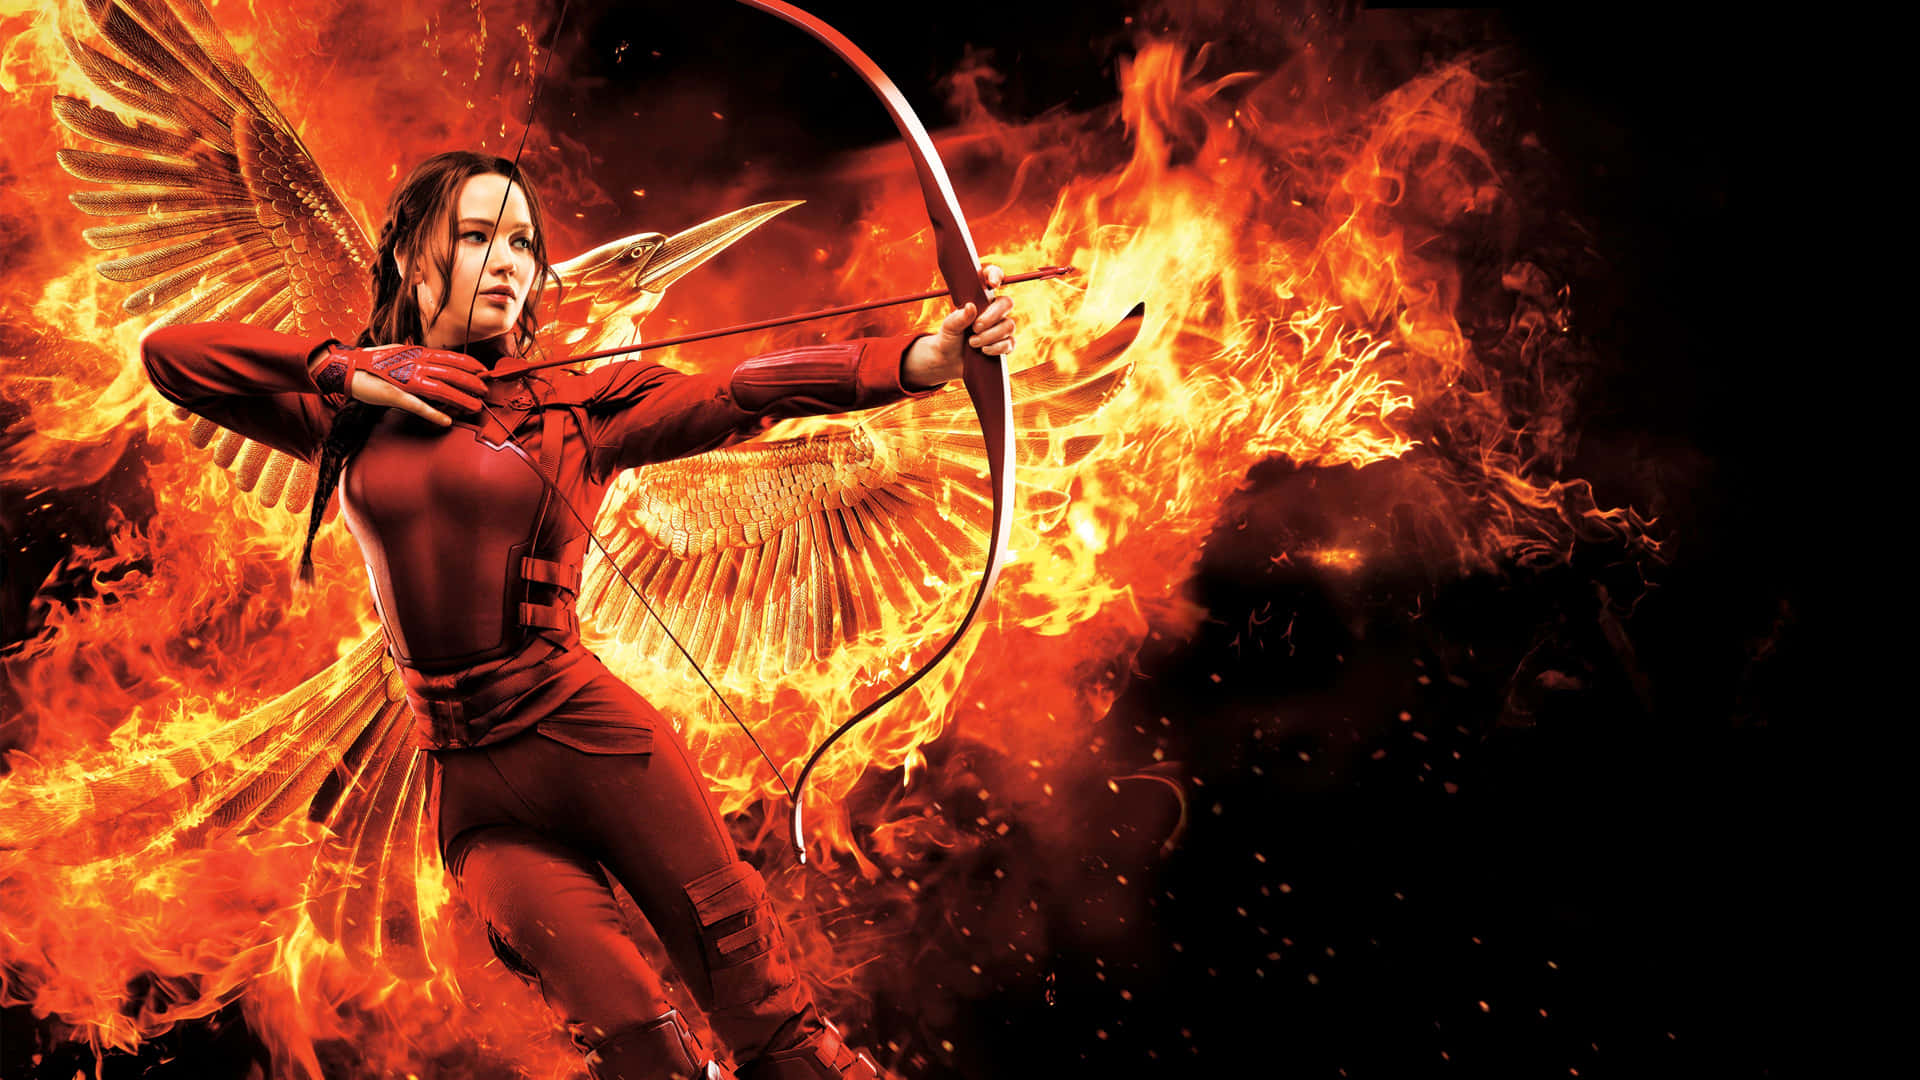 Igiochi Della Fame - Katniss Everdeen - Sfondi In Alta Definizione